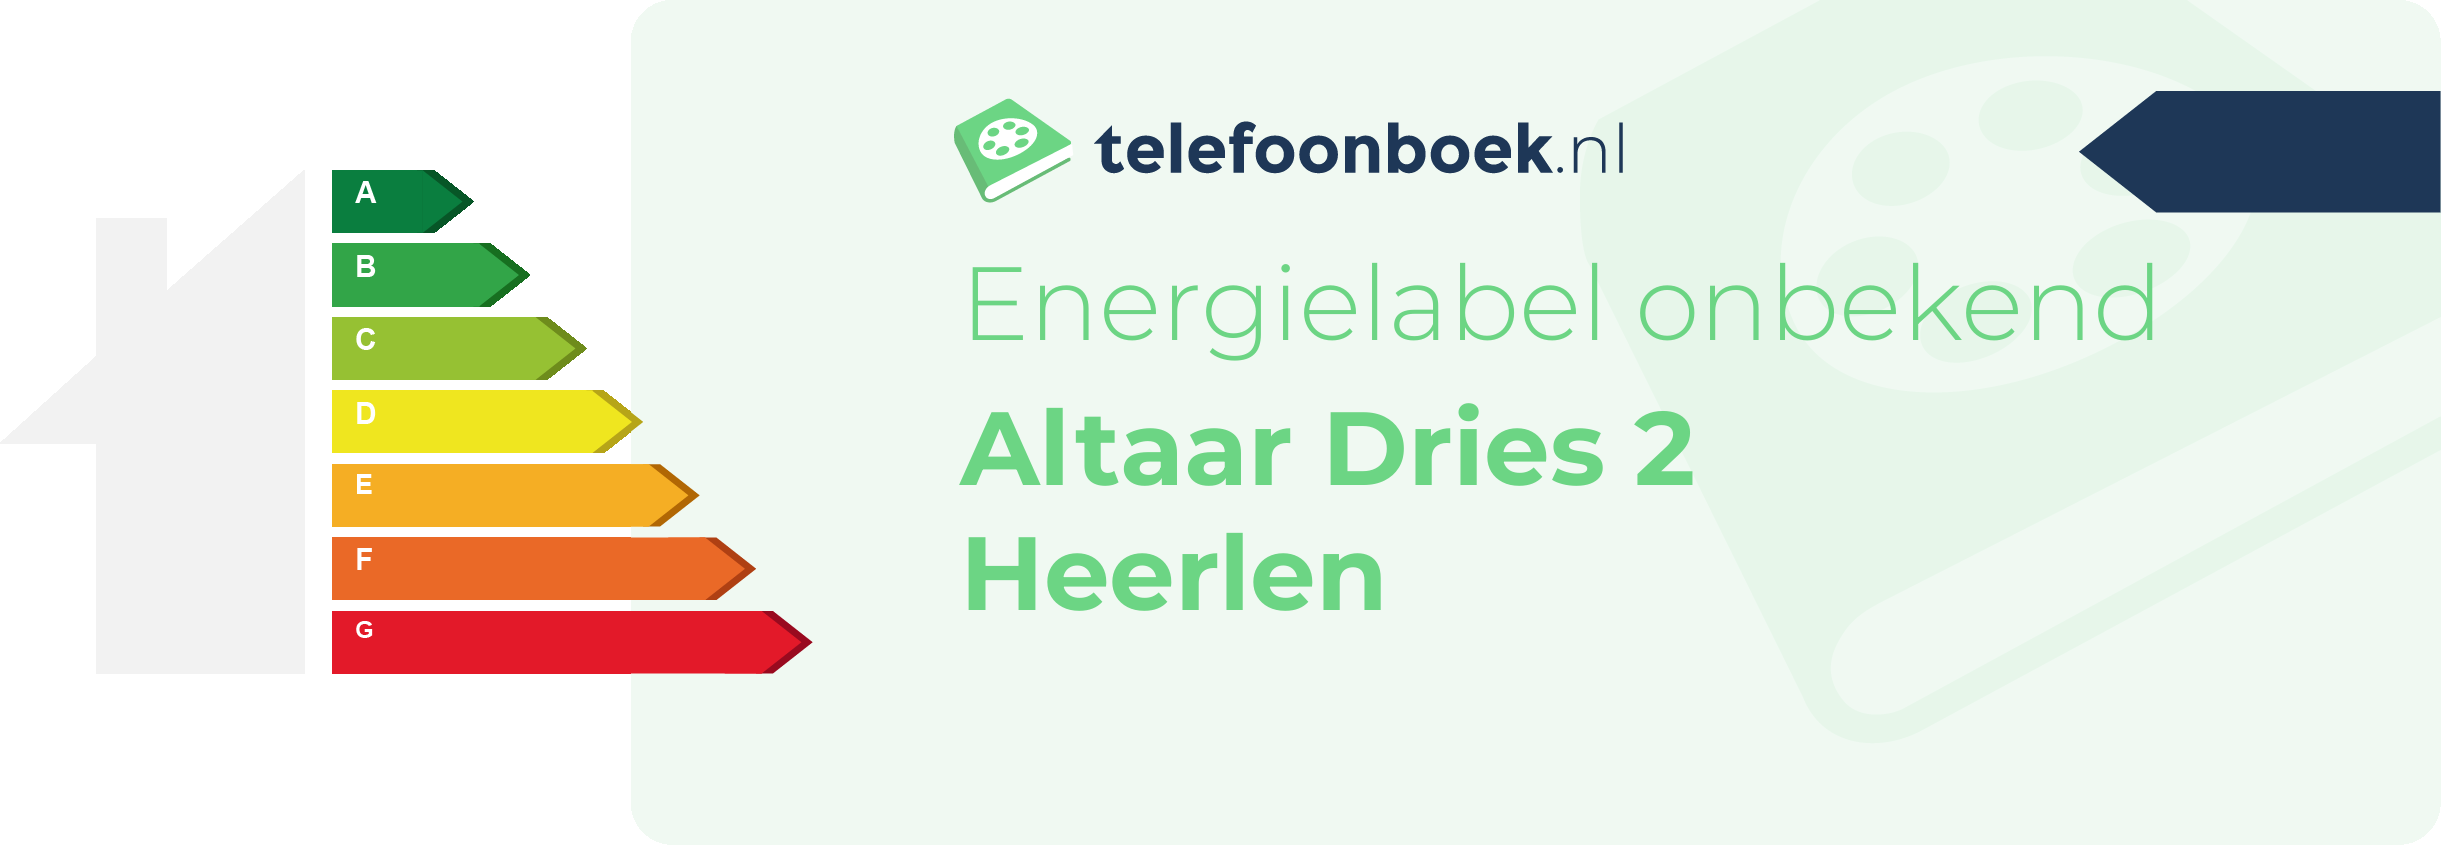 Energielabel Altaar Dries 2 Heerlen